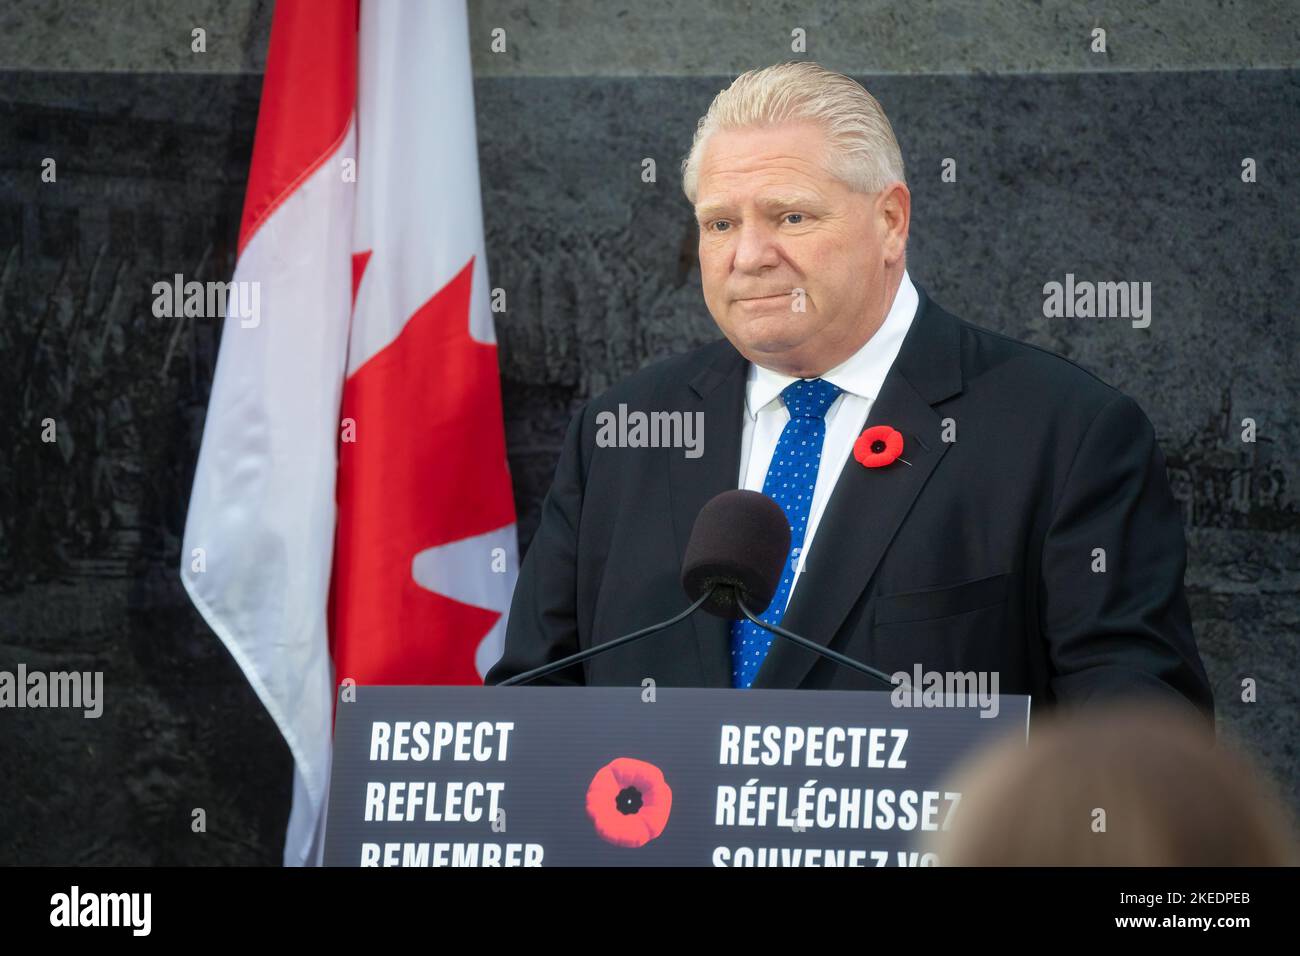 Doug Ford, el primer ministro de Ontario, pronuncia un discurso durante una ceremonia del Día de la Conmemoración ante el Monumento a los Veteranos de Ontario en Queen's Park. Foto de stock